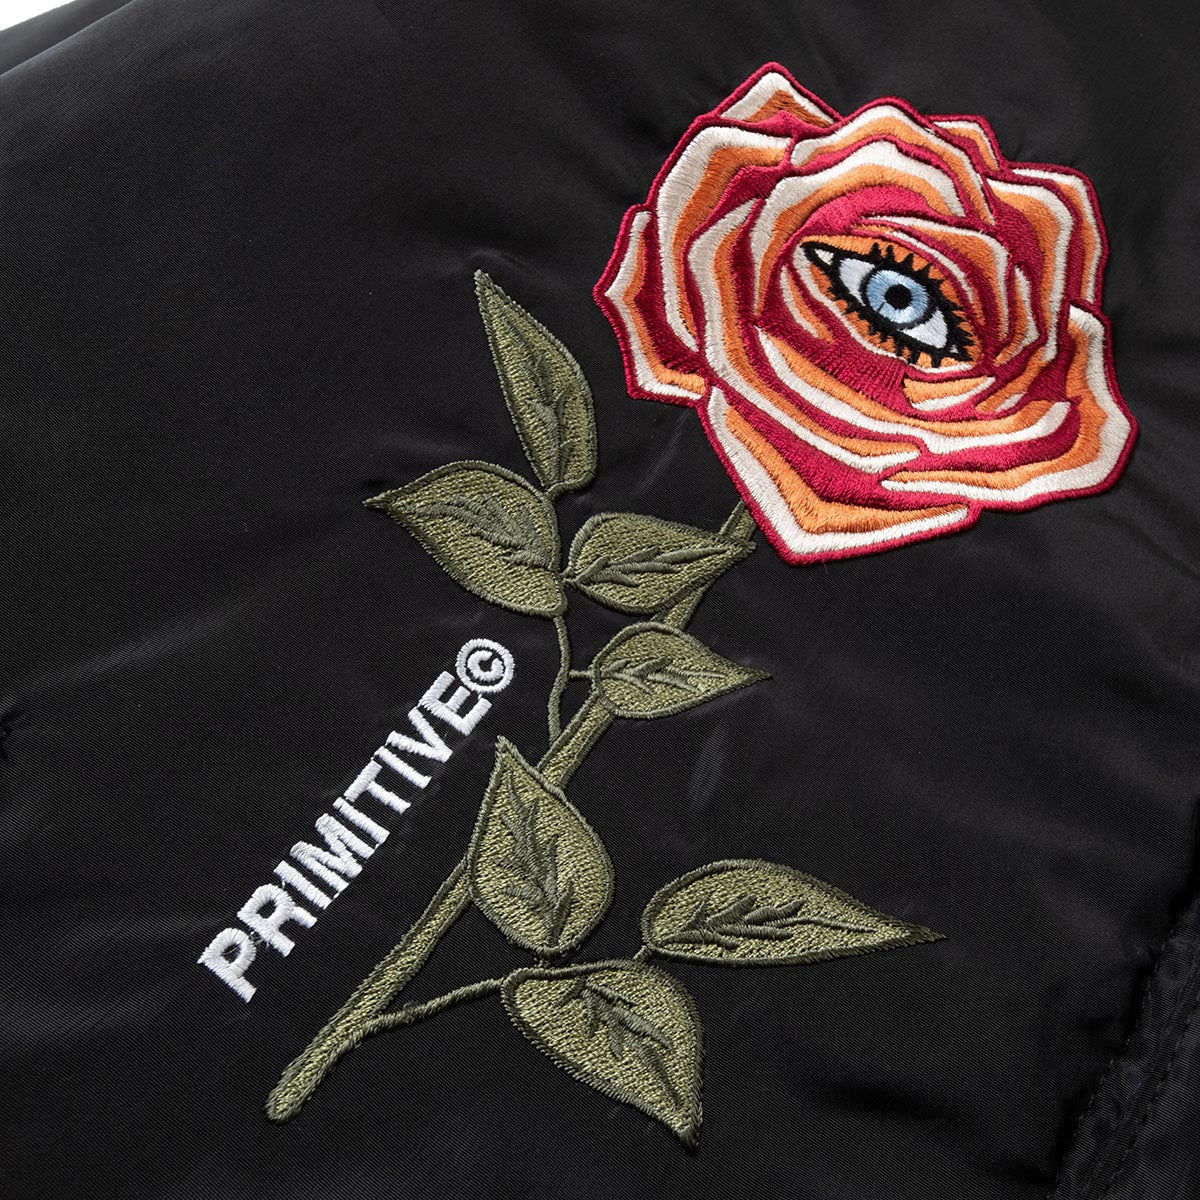 Primitive Rebirth Two-fer Jacket - Black image 3